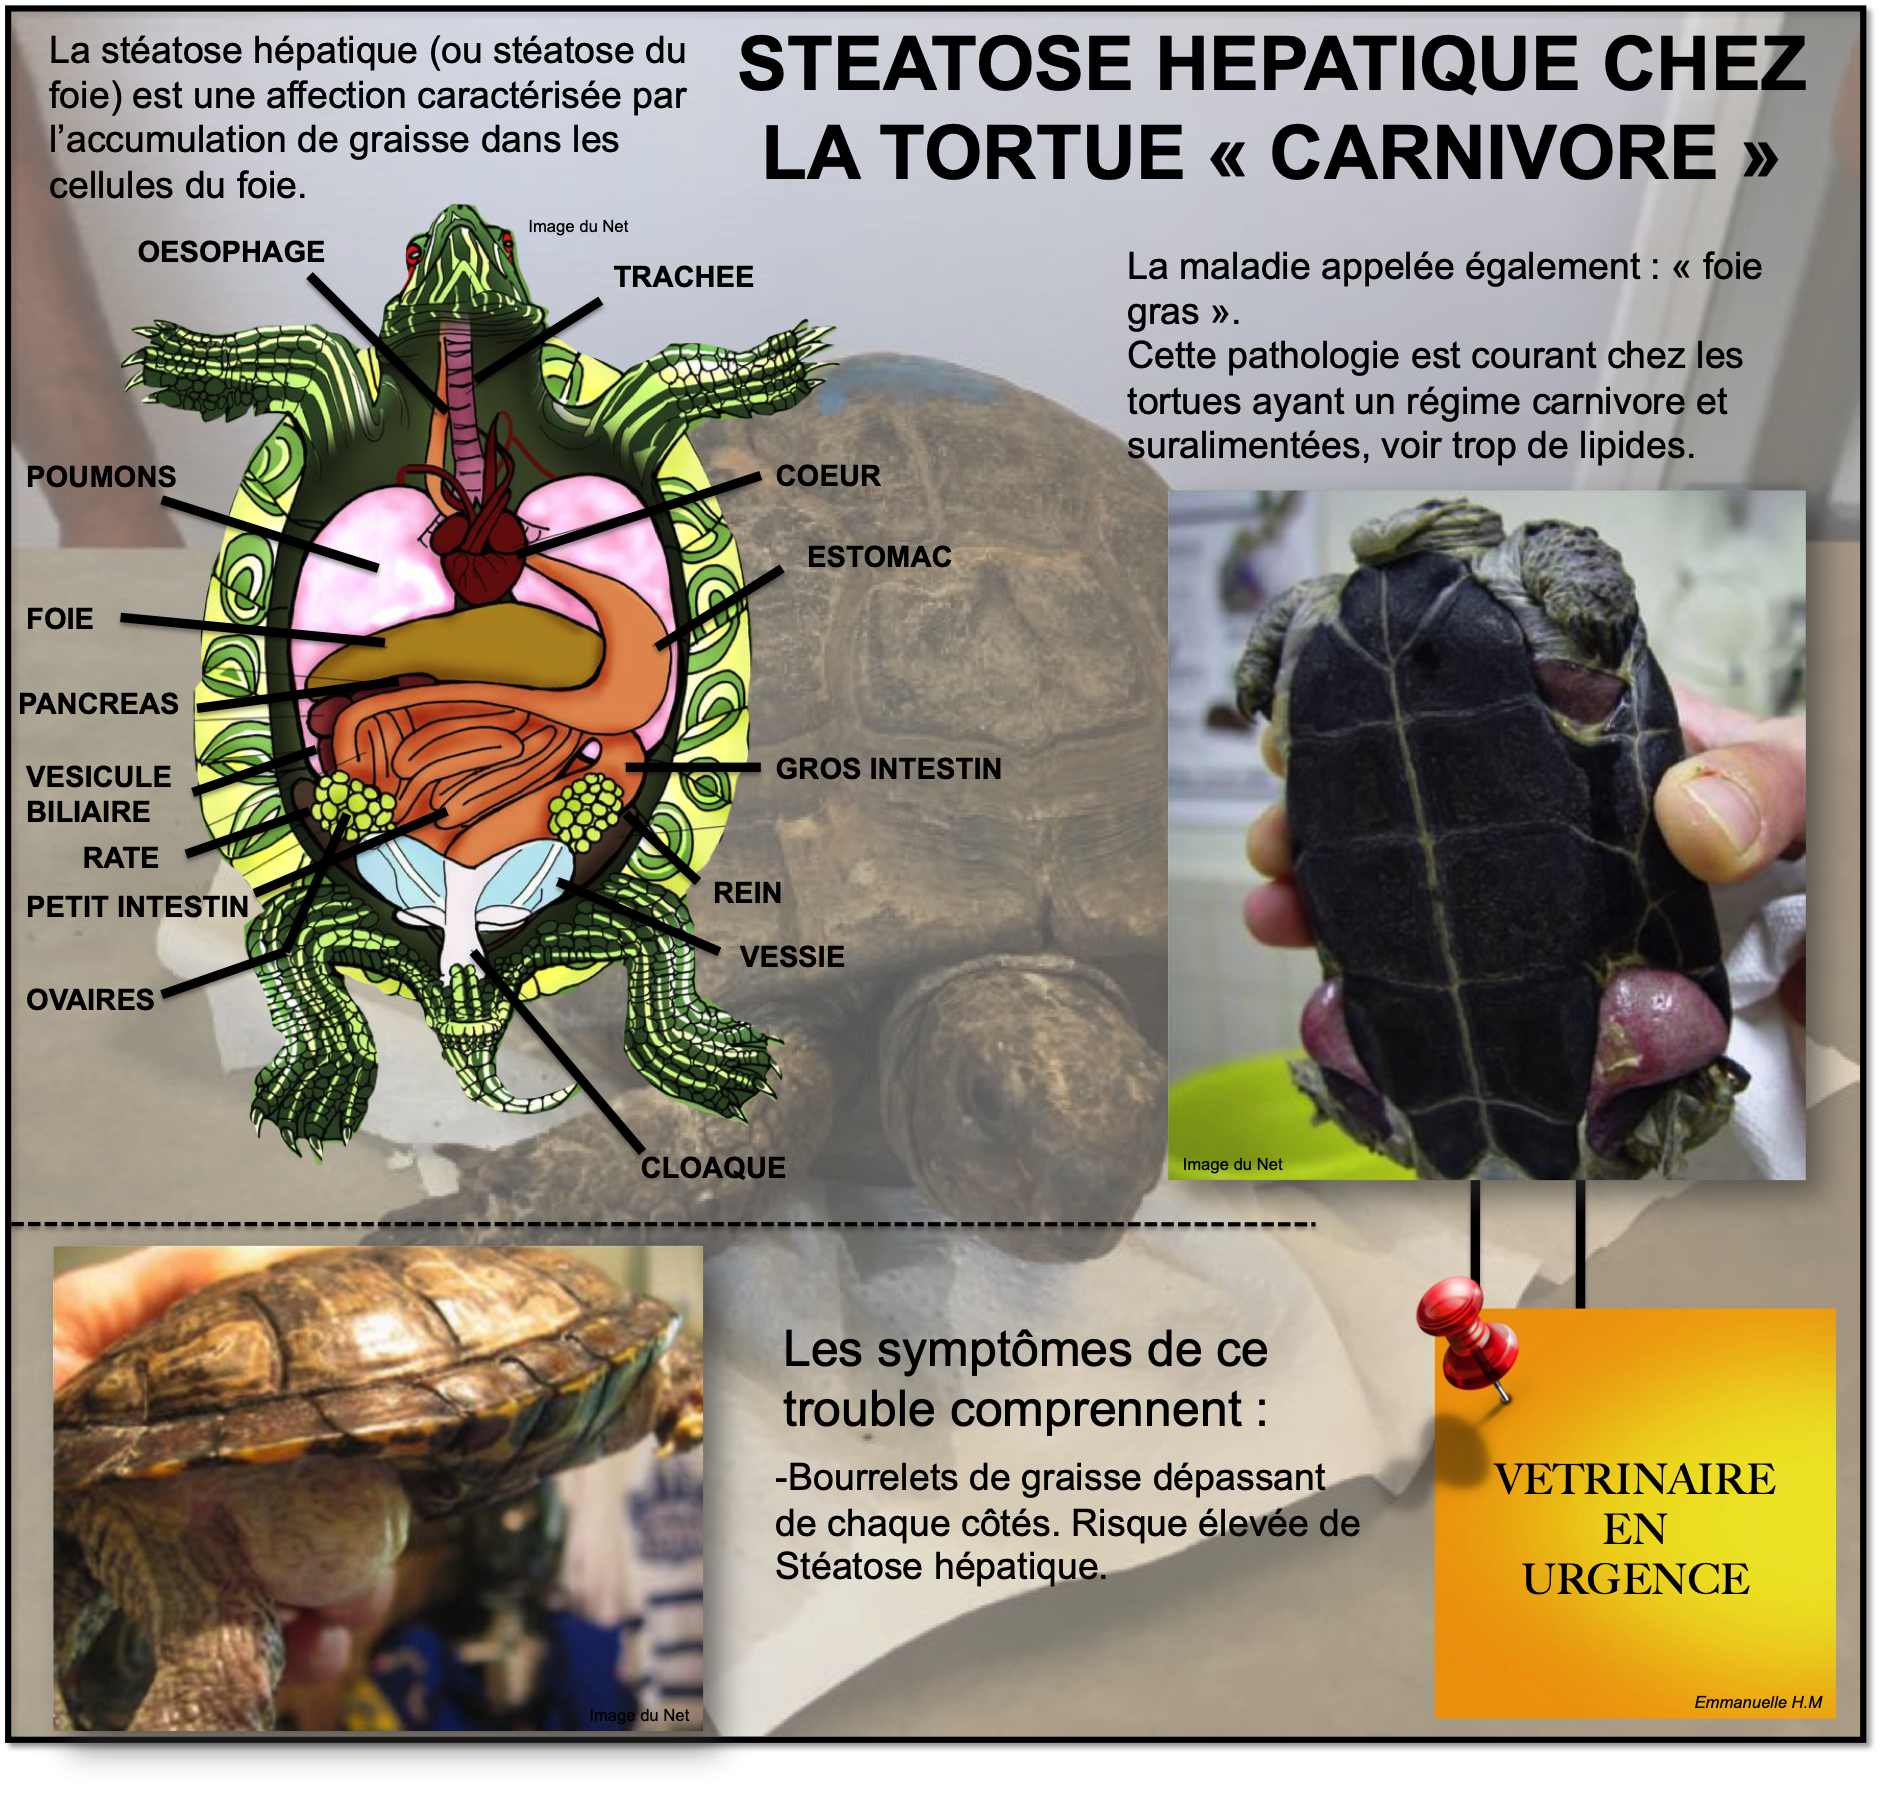 Steatose hepatique